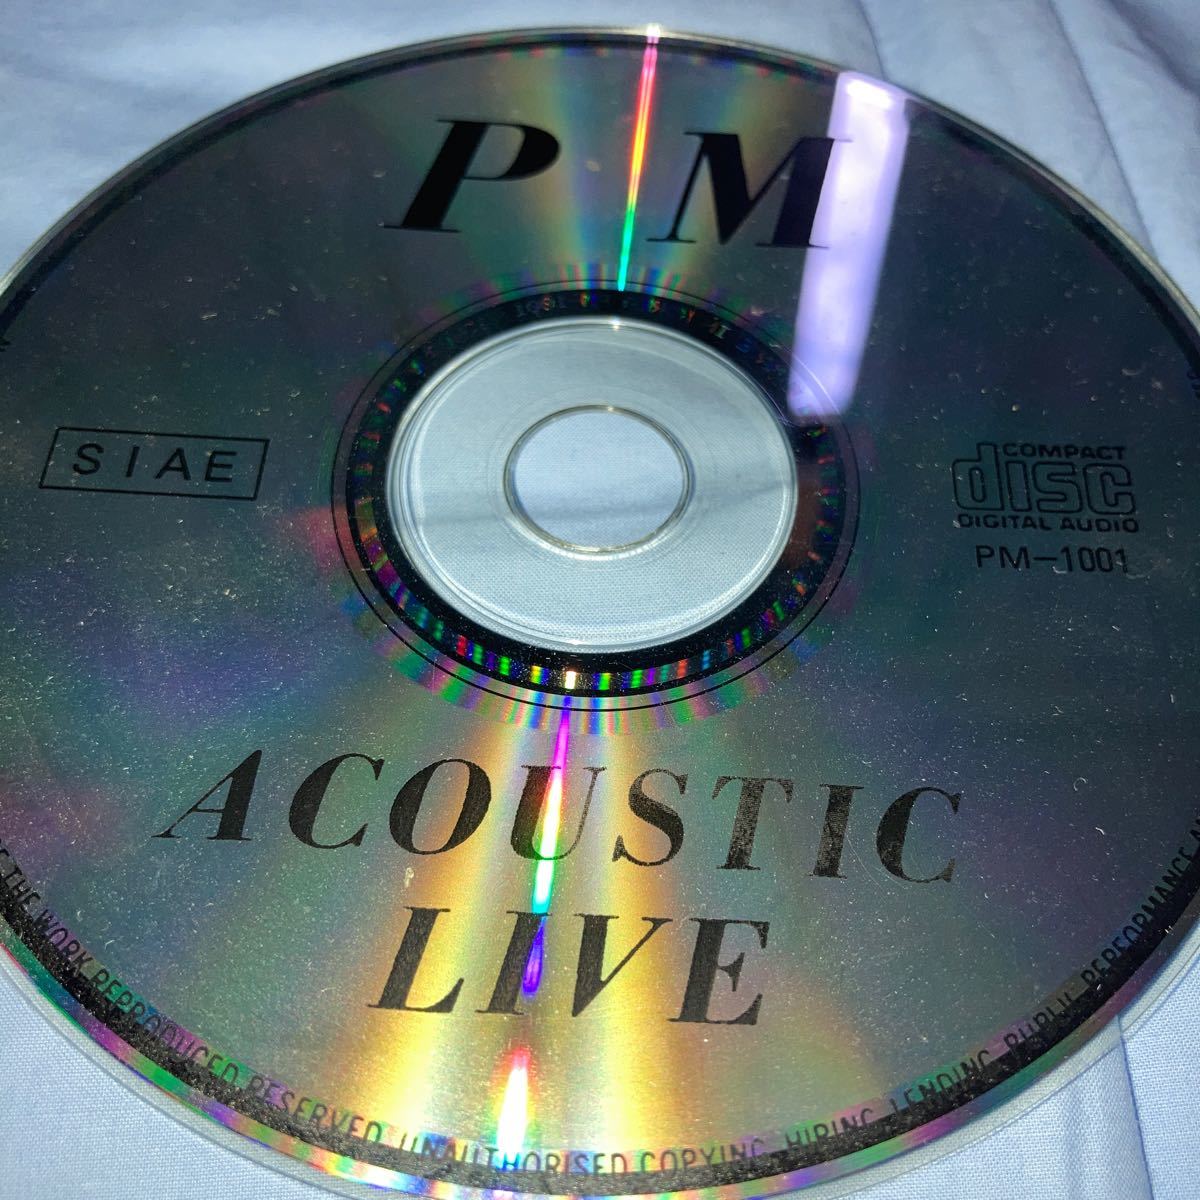 ポールマッカートニーコレクターズCD Unpluggedが主に収録されております。discのみですがプラケースに入れて発送致します